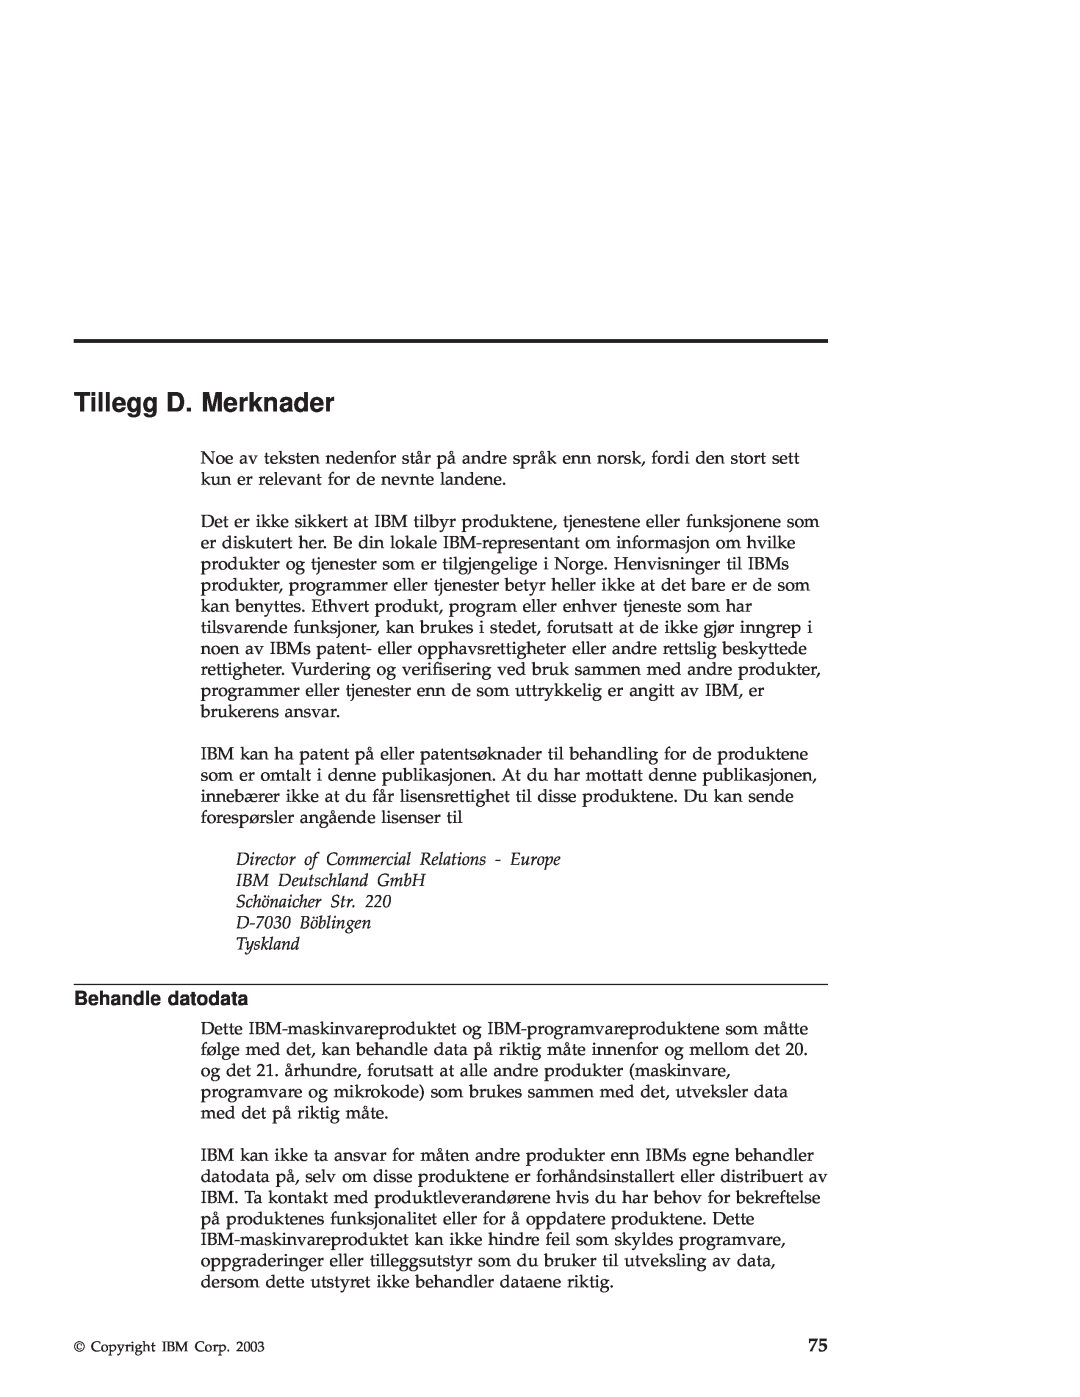 IBM R50 manual Tillegg D. Merknader, Behandle datodata 